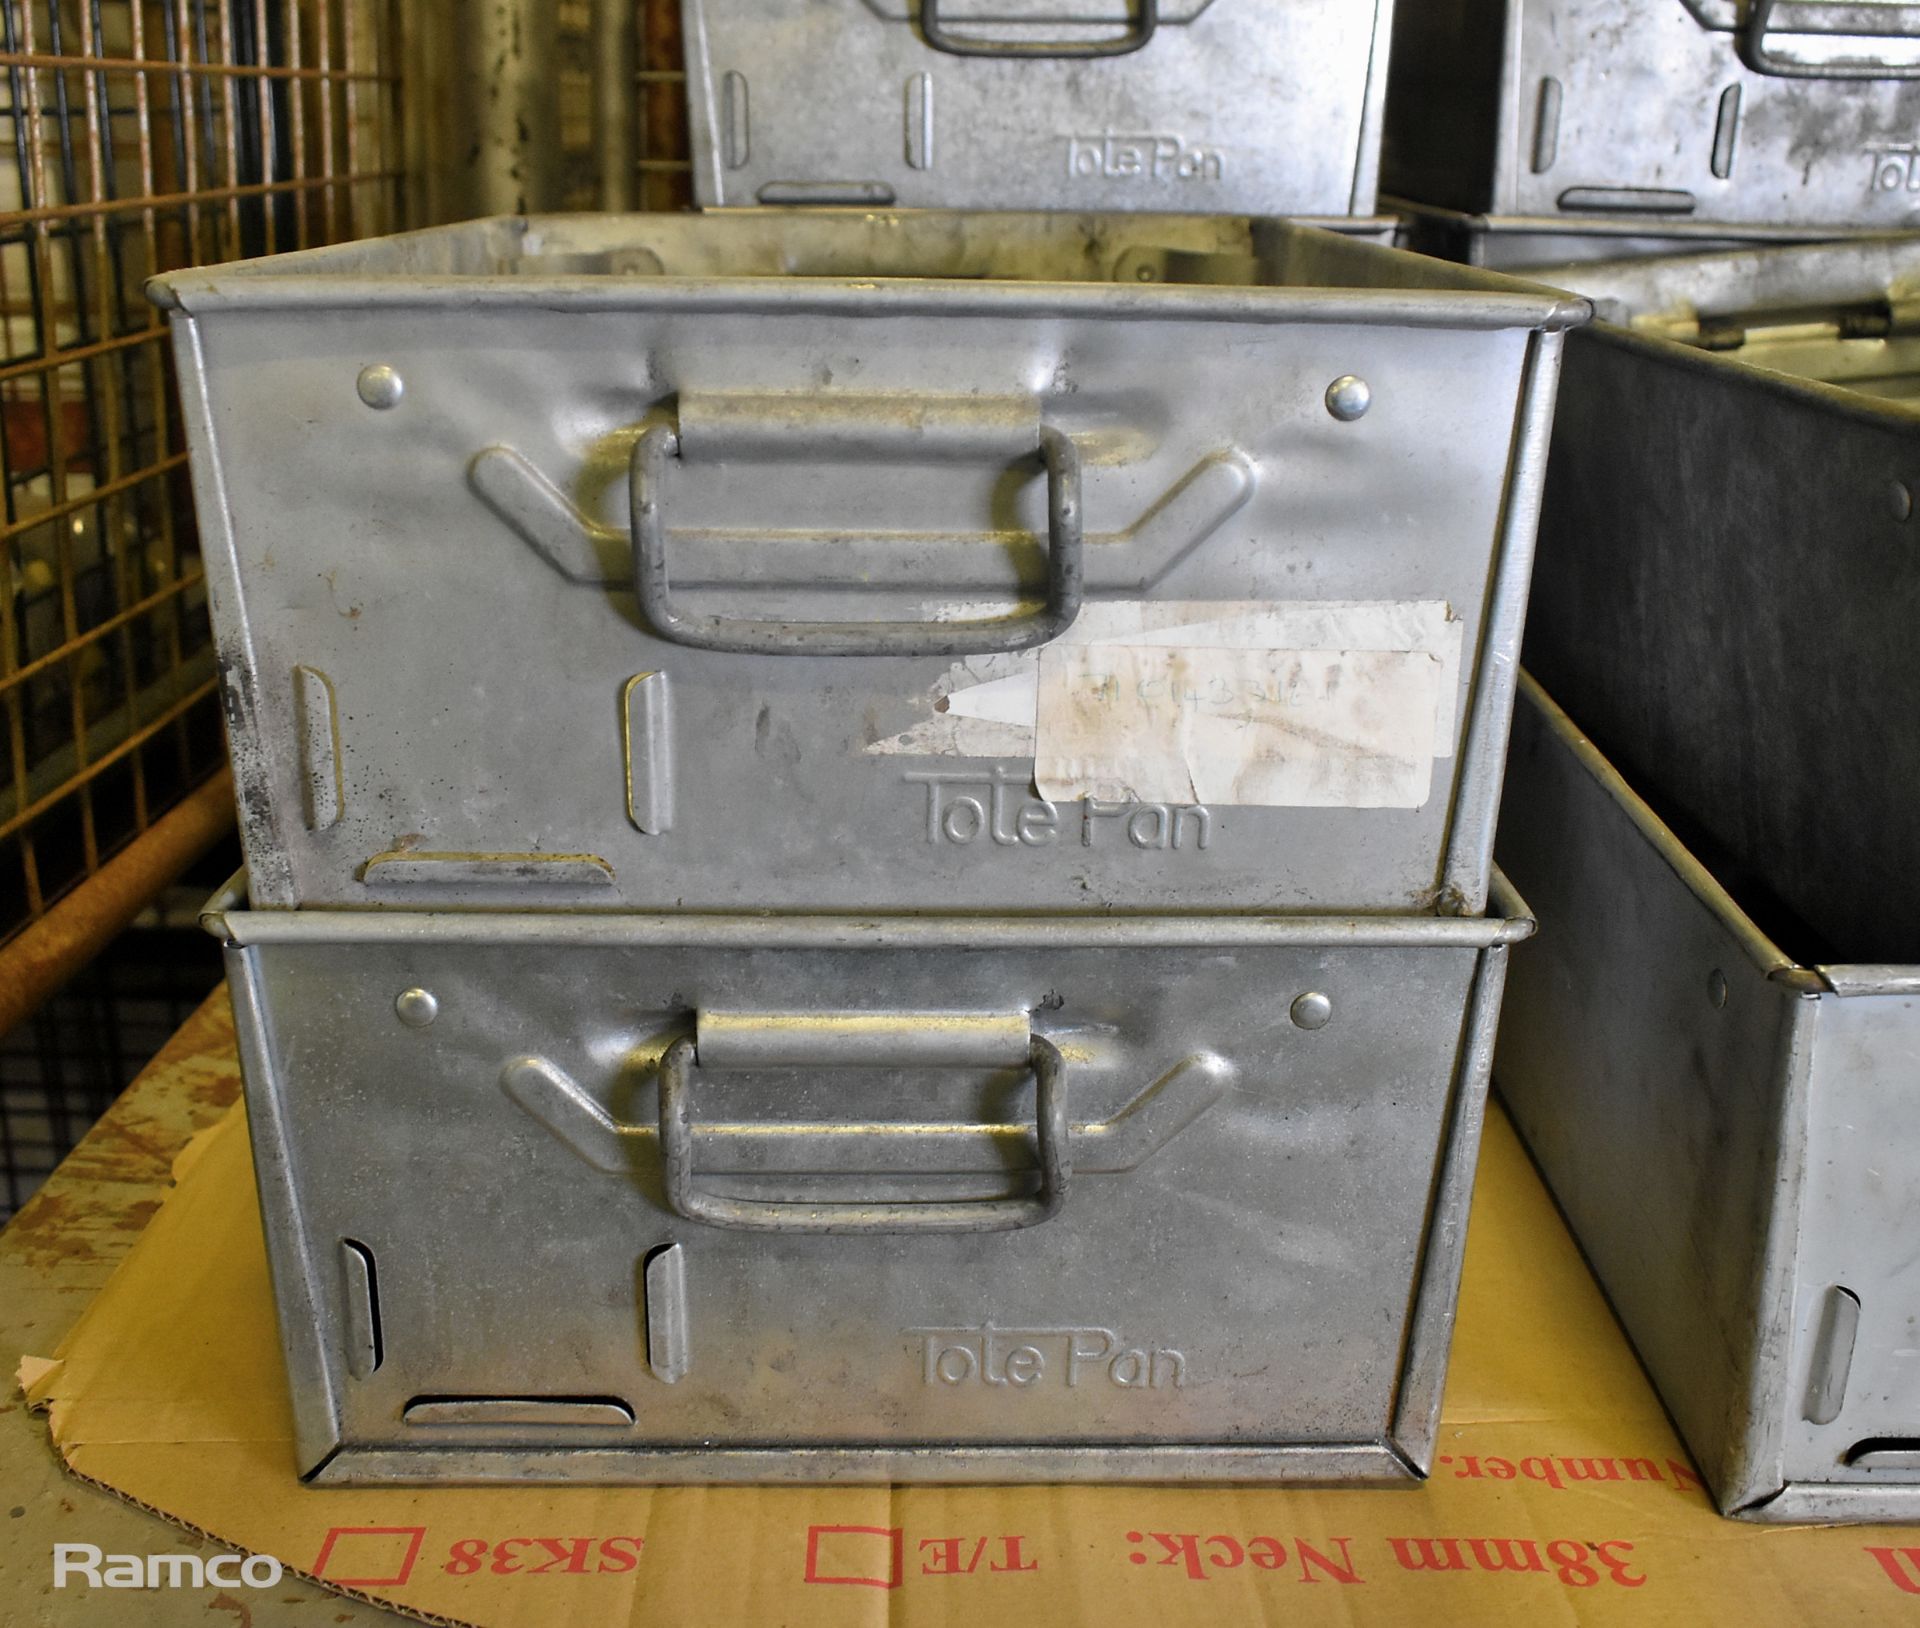 16x engineers tote pan storage bins - Image 2 of 4